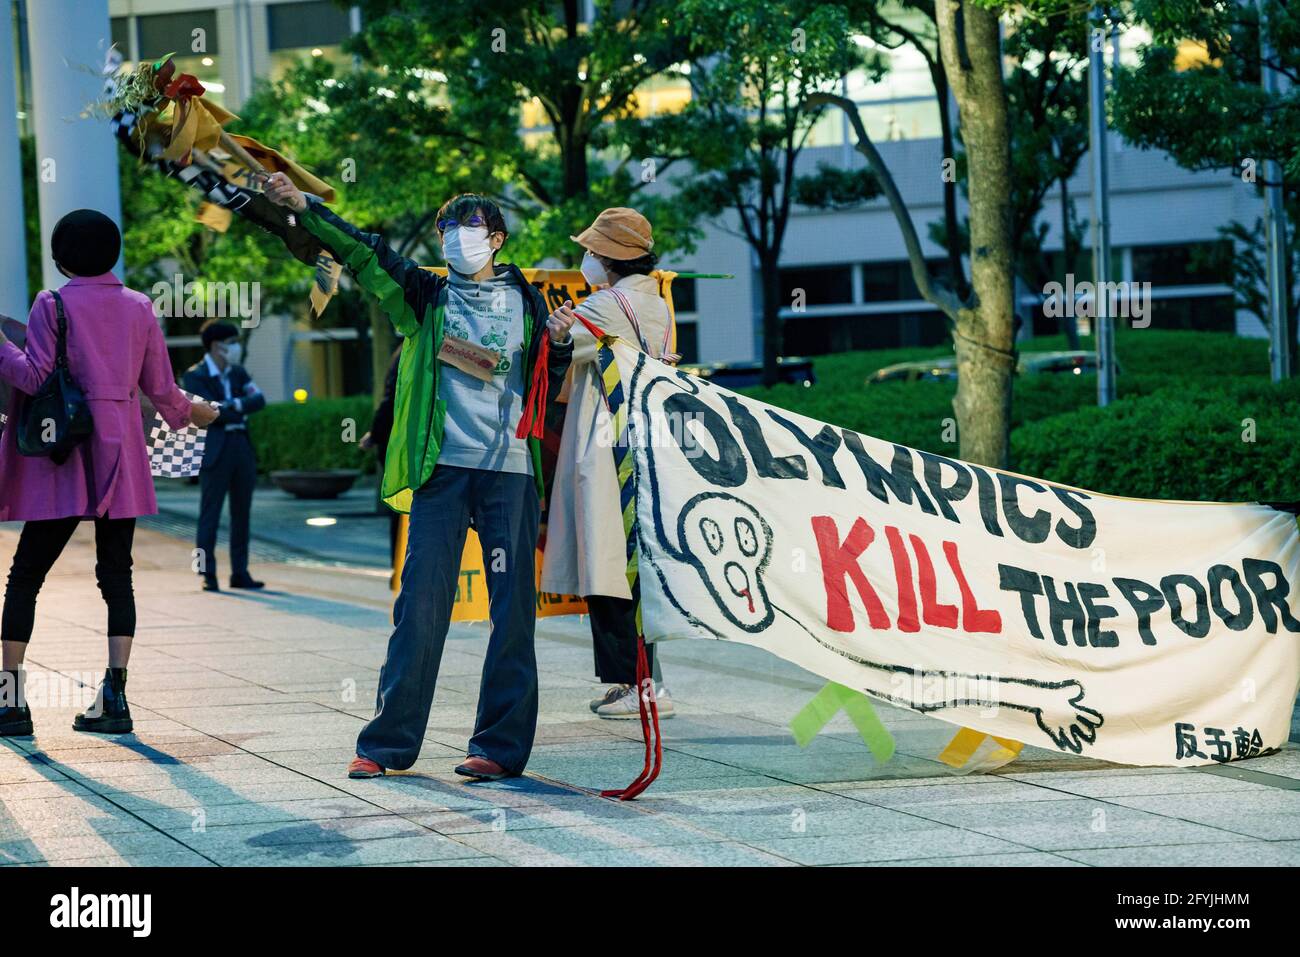 29. Mai 2021: Protestierende Wellen Band mit mehreren Sprachen geschrieben, während ein "Olympics Kill the Poor" Zeichen während des Protests gegen die Olympischen Spiele 2020/2021 in Tokio Stockfoto